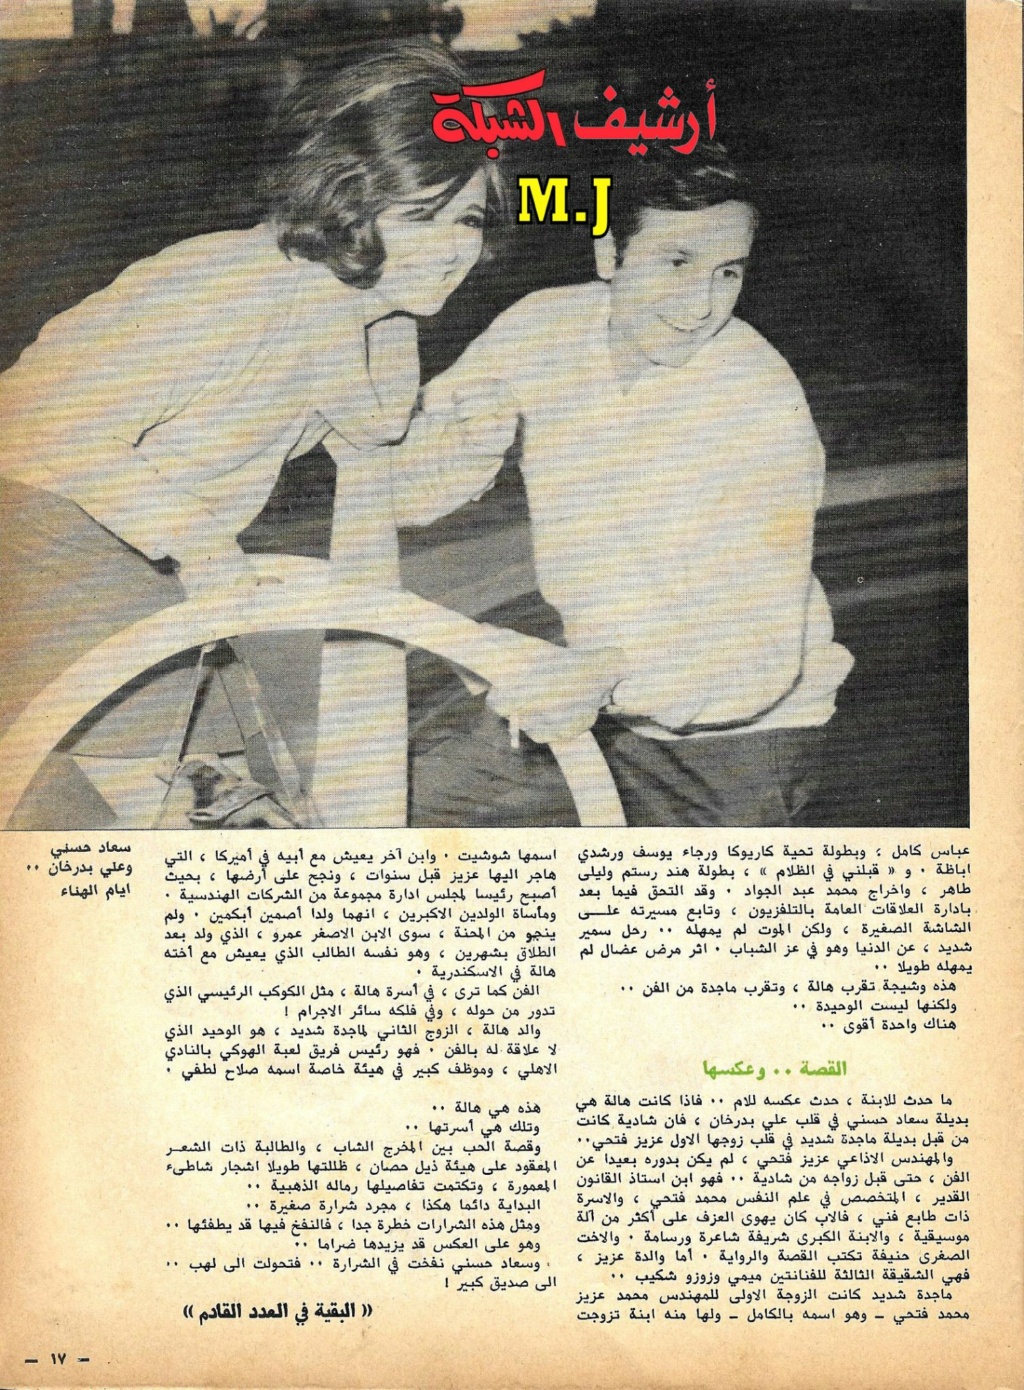 بدرخان - مقال صحفي : سعاد حسني وعلي بدرخان وقصة الحب الذي كان 1981 م 415